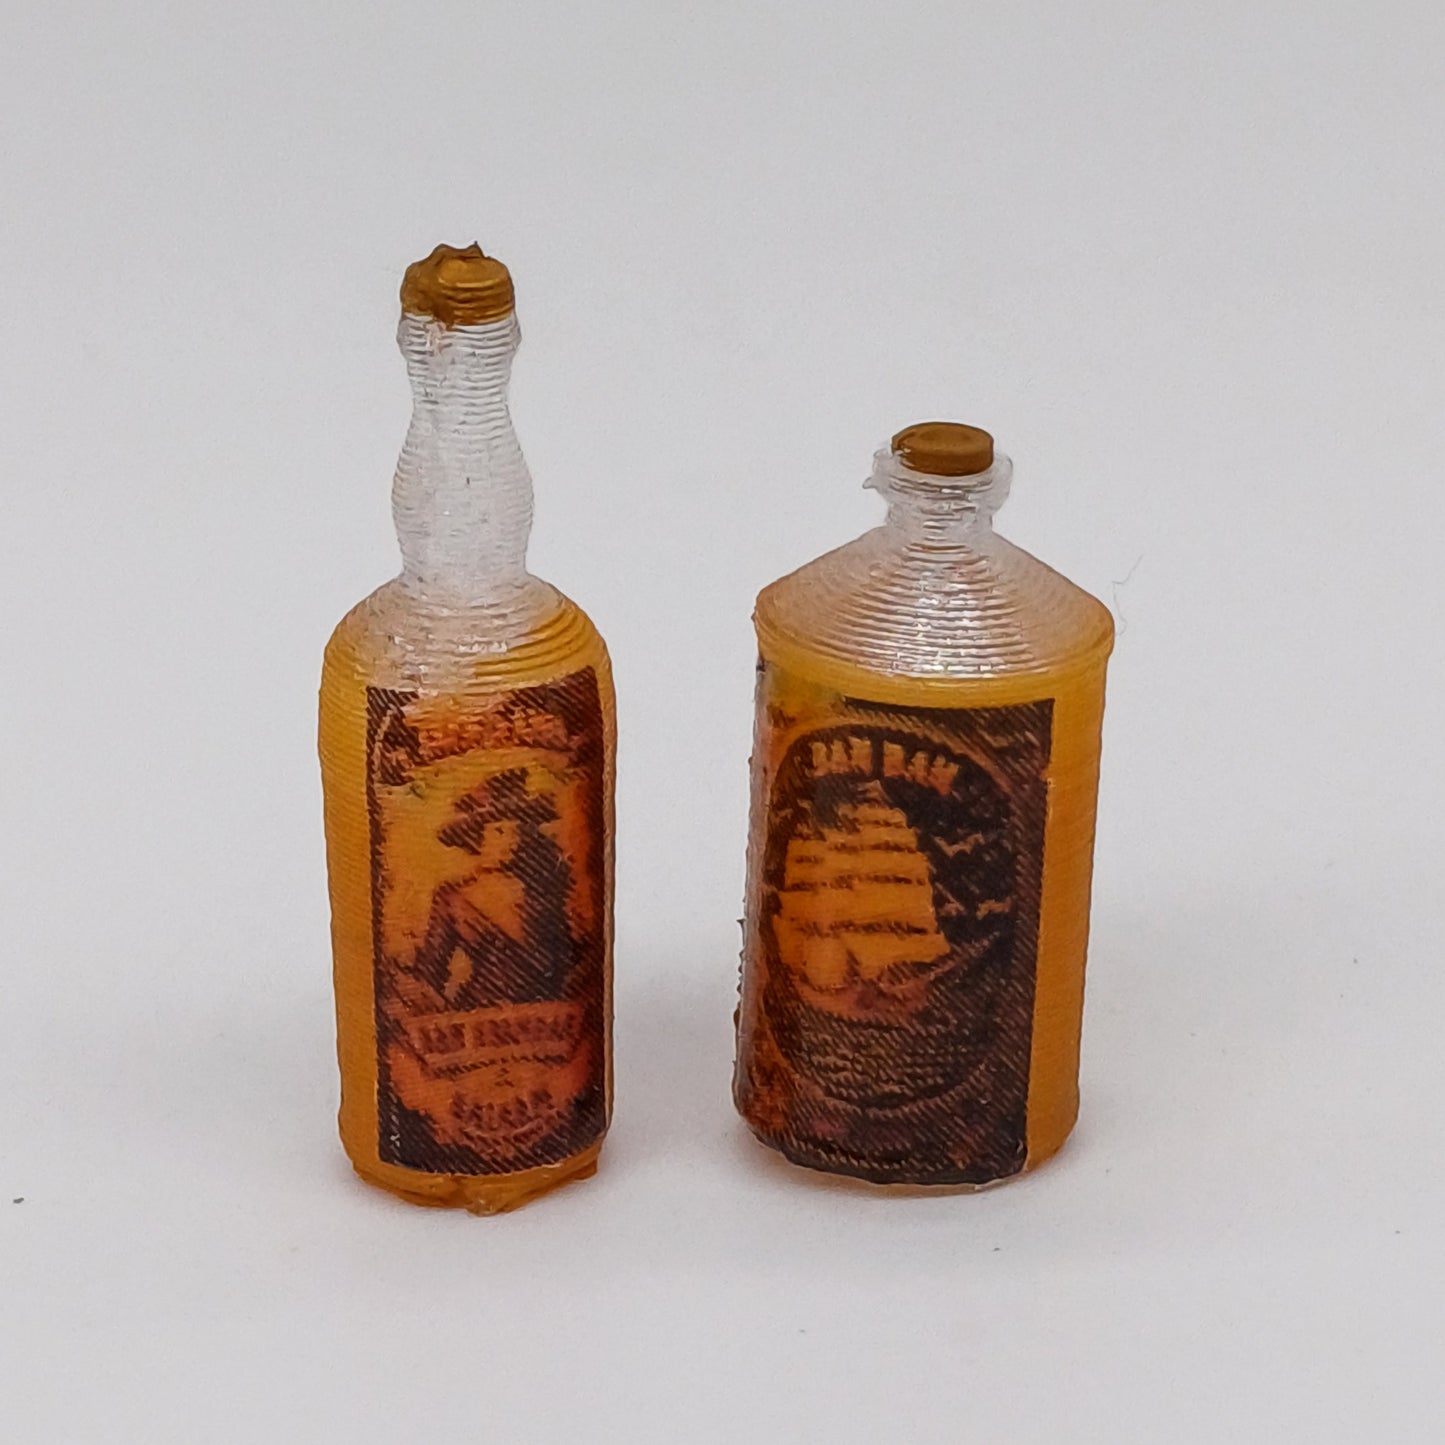 Alkohol Flaschen Miniaturen im Maßstab 1:12 - Bemalt - Miniaturen